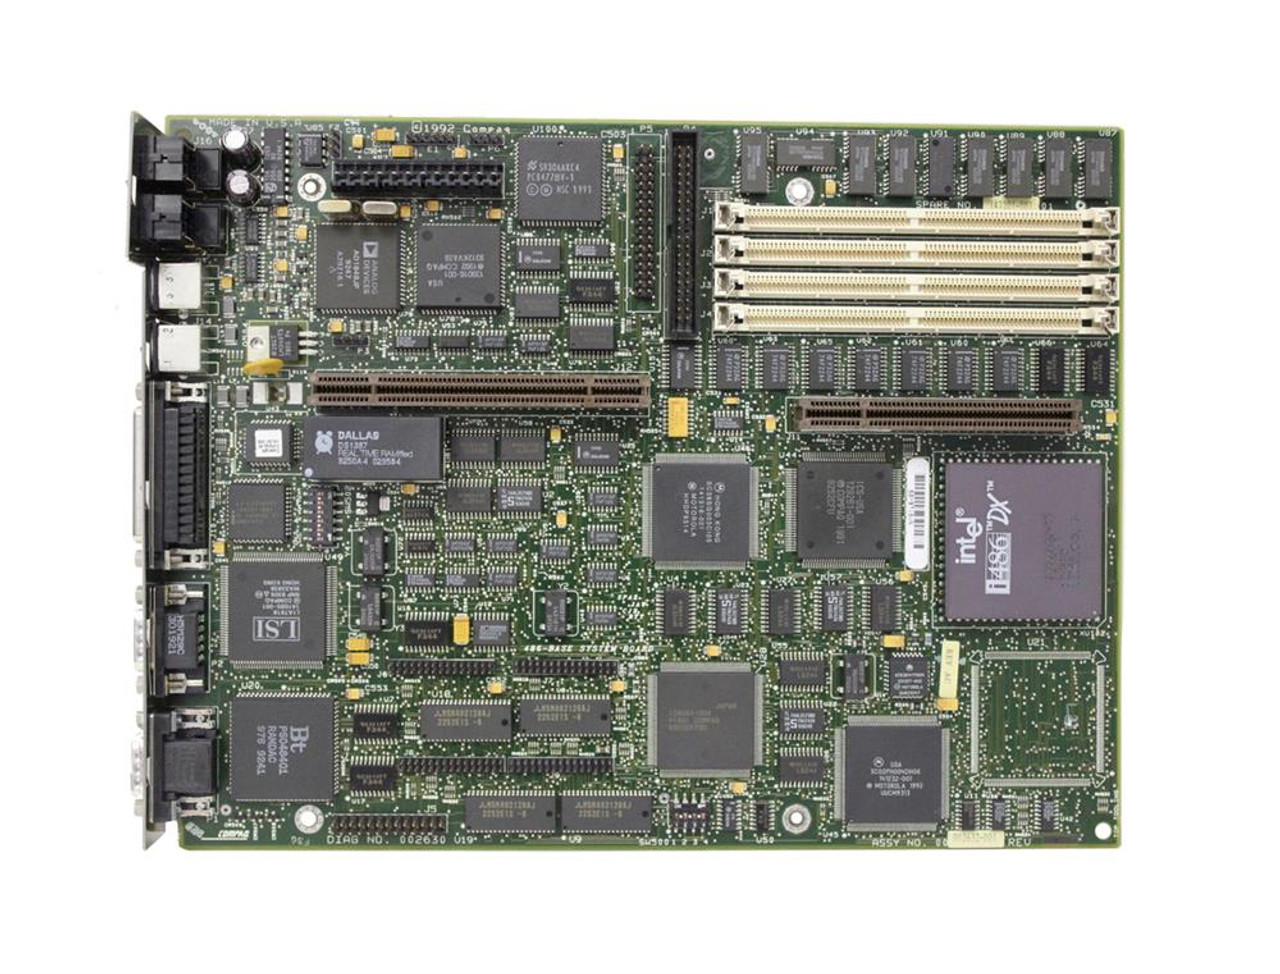 147201-001 Compaq System Board (Motherboard) for Deskpro 486/33 (Refurbished)